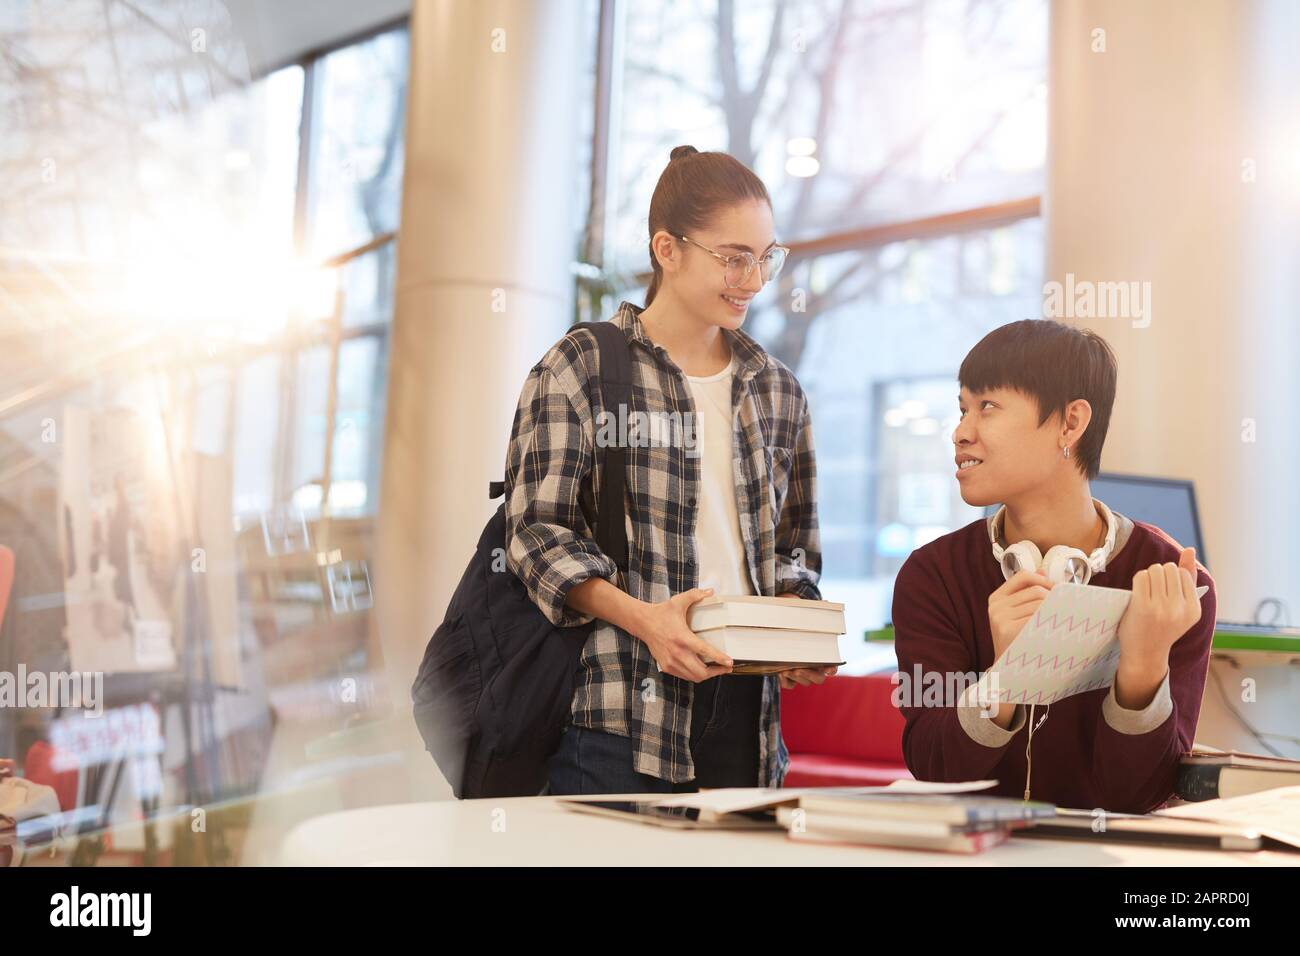 Joven adolescente sonriente sosteniendo libros y hablando con su compañero de clase que estudian en la biblioteca juntos Foto de stock